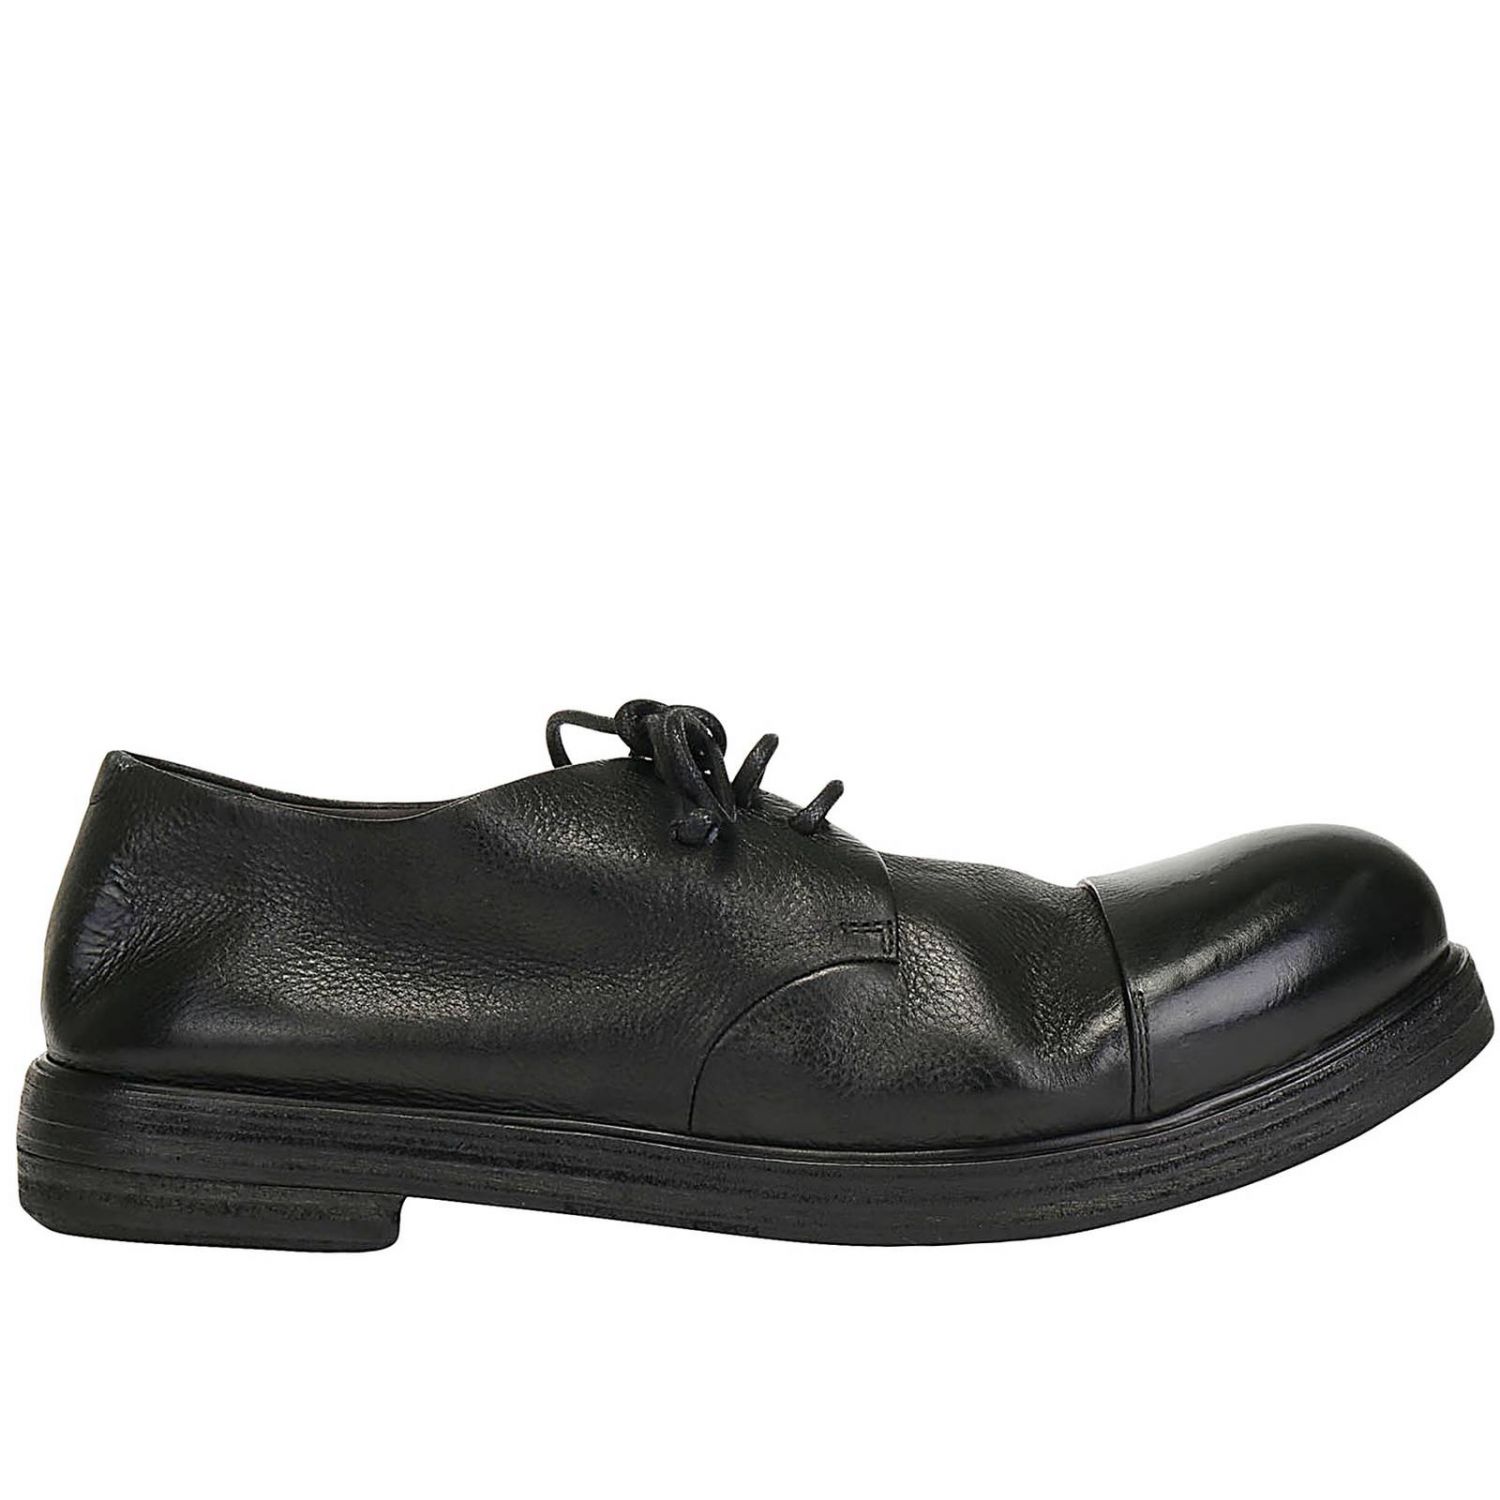 Derbys zucca zeppa marine Cuir Marsèll pour homme en coloris Noir Homme Chaussures Chaussures  à lacets Chaussures derby 